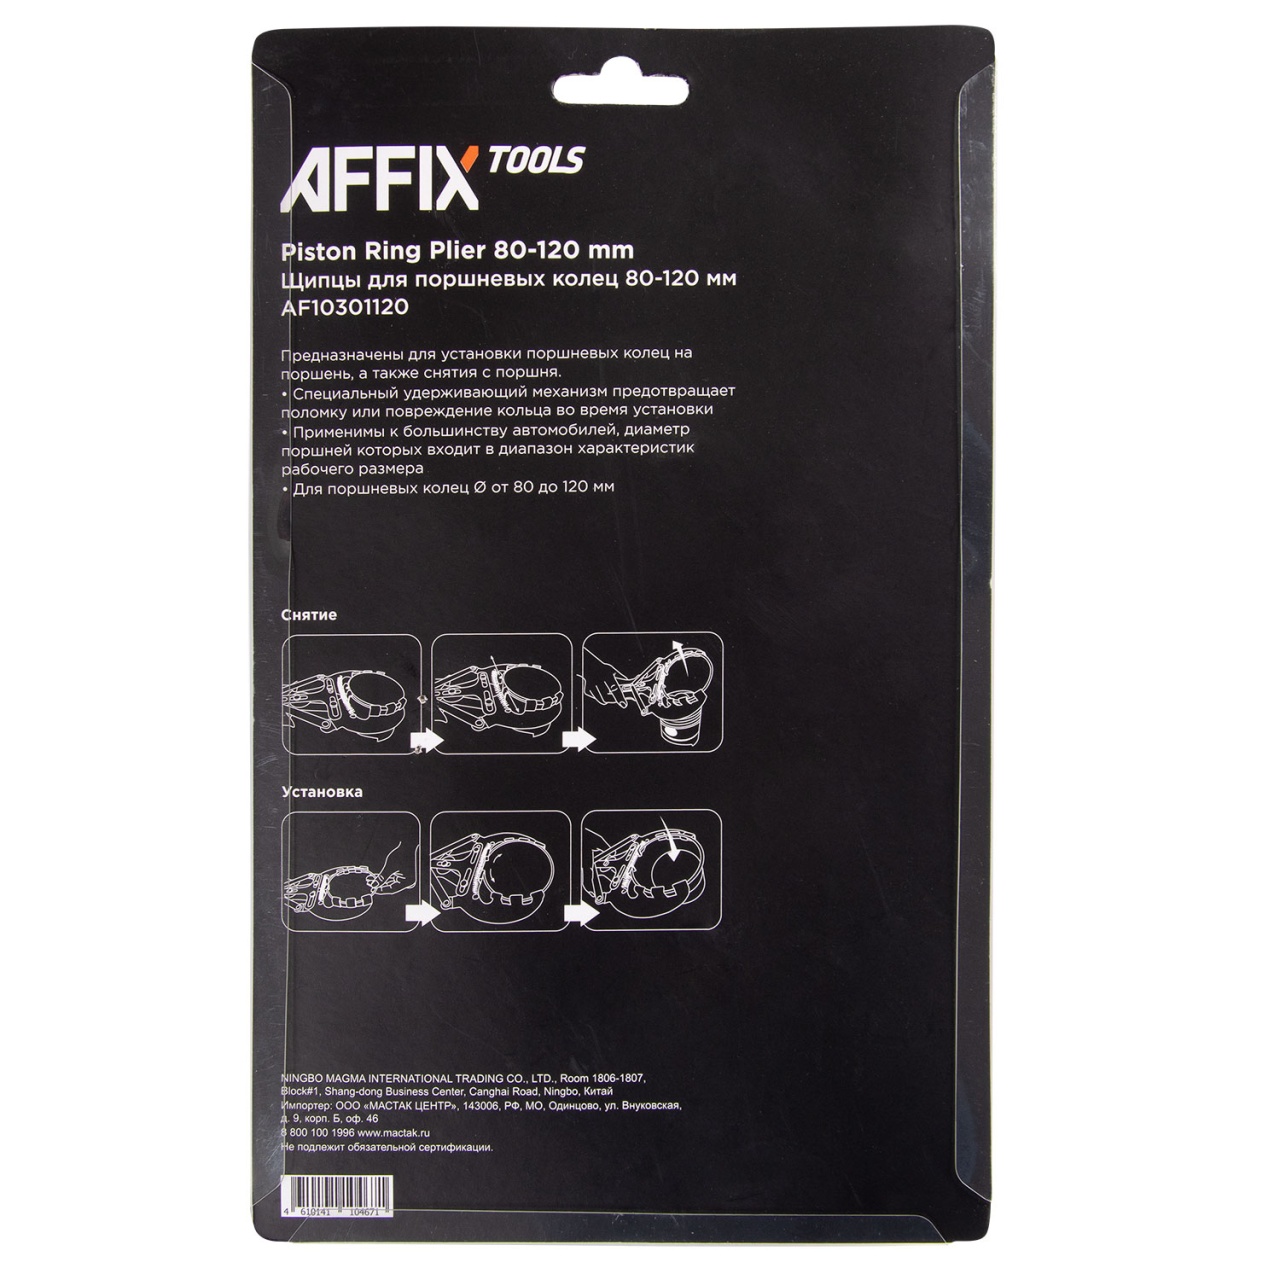 Щипцы для поршневых колец, 80-120 мм AFFIX AF10301120